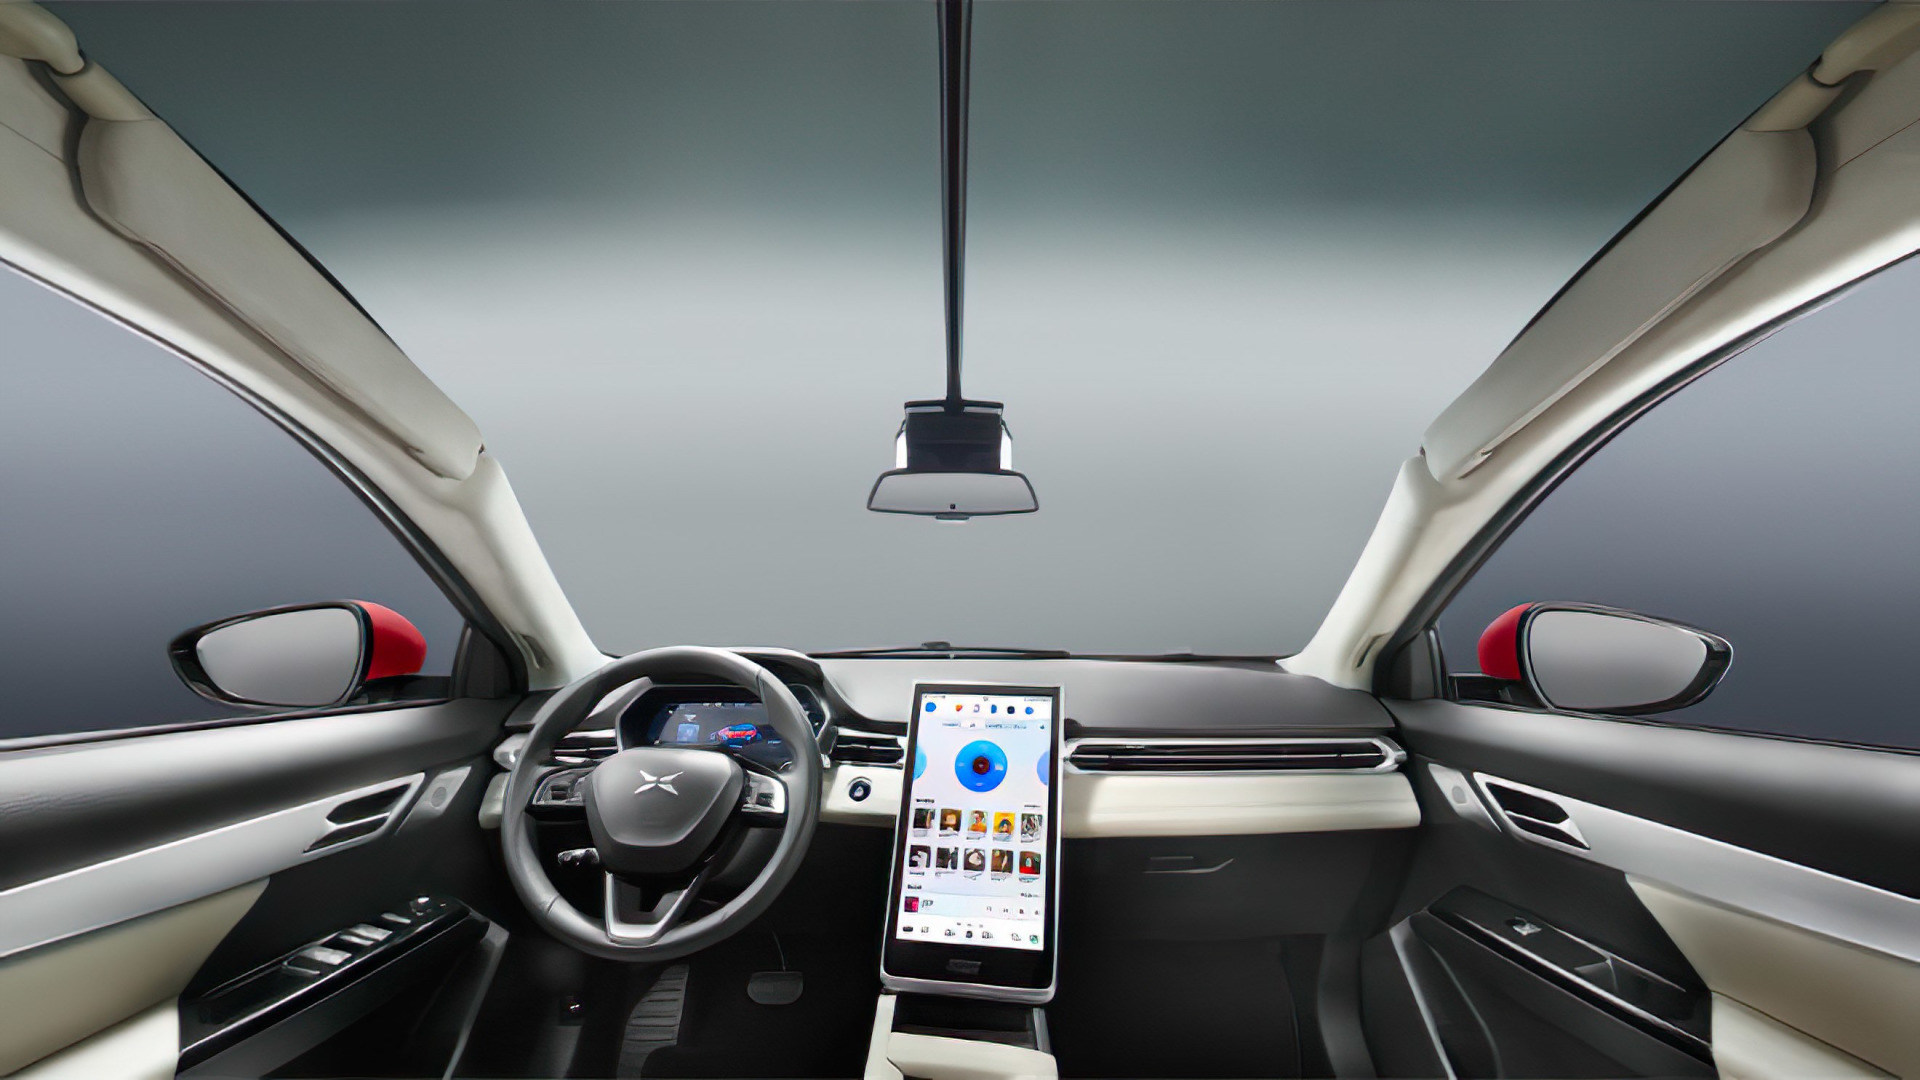 Thông tin mới nhất về mẫu xe ô tô của Xiaomi: Micar đẹp hơn cả xe của Apple 2